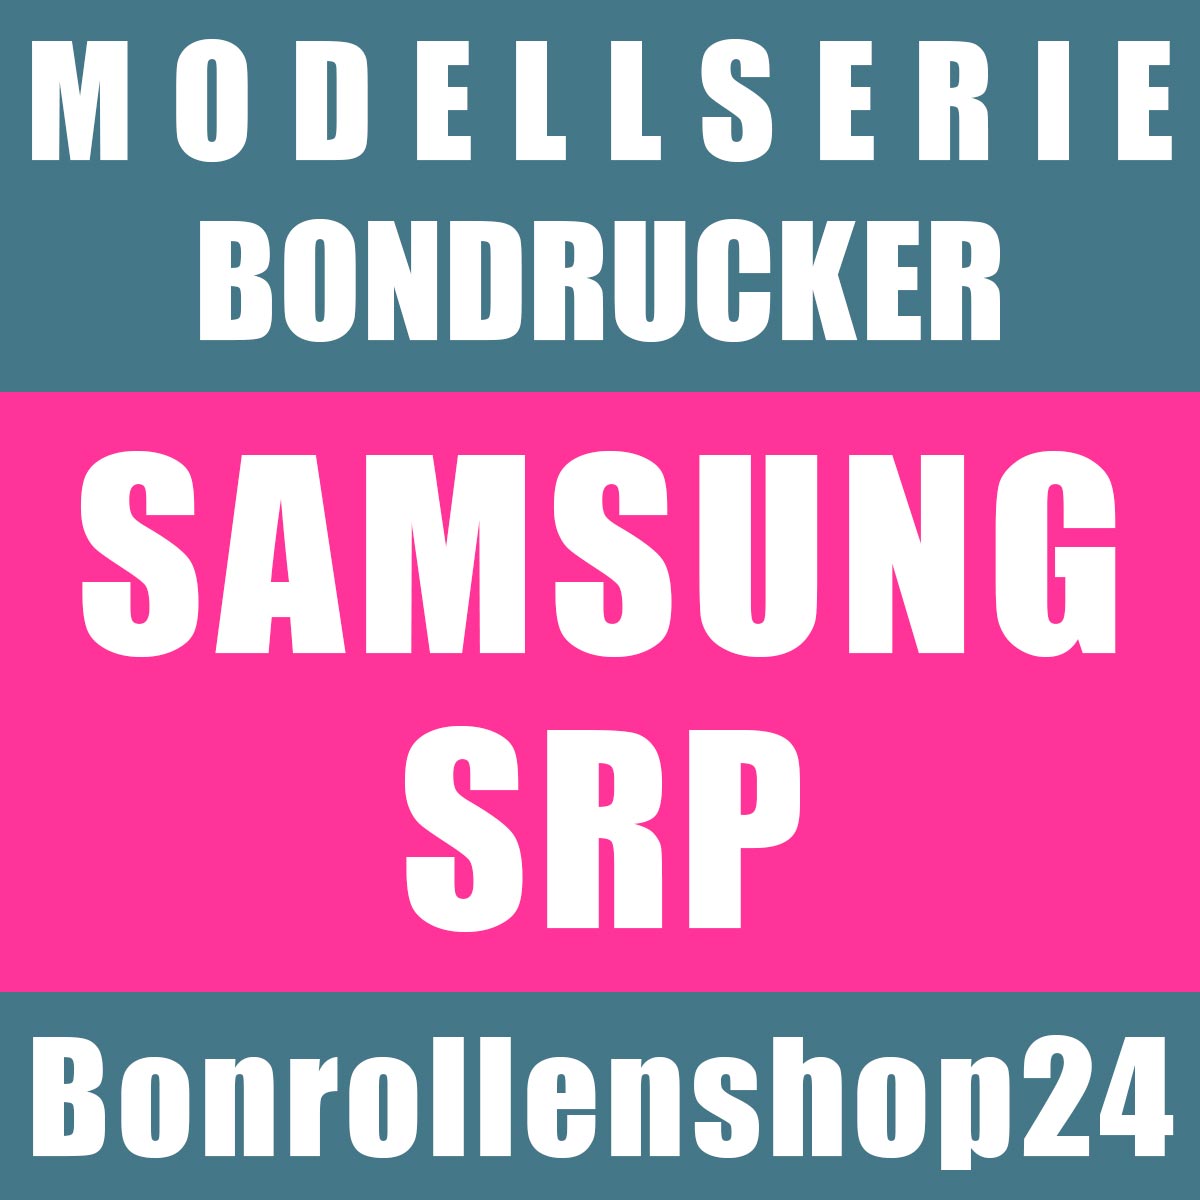 Bonrollen für Bondrucker der Serie Samsung SRP